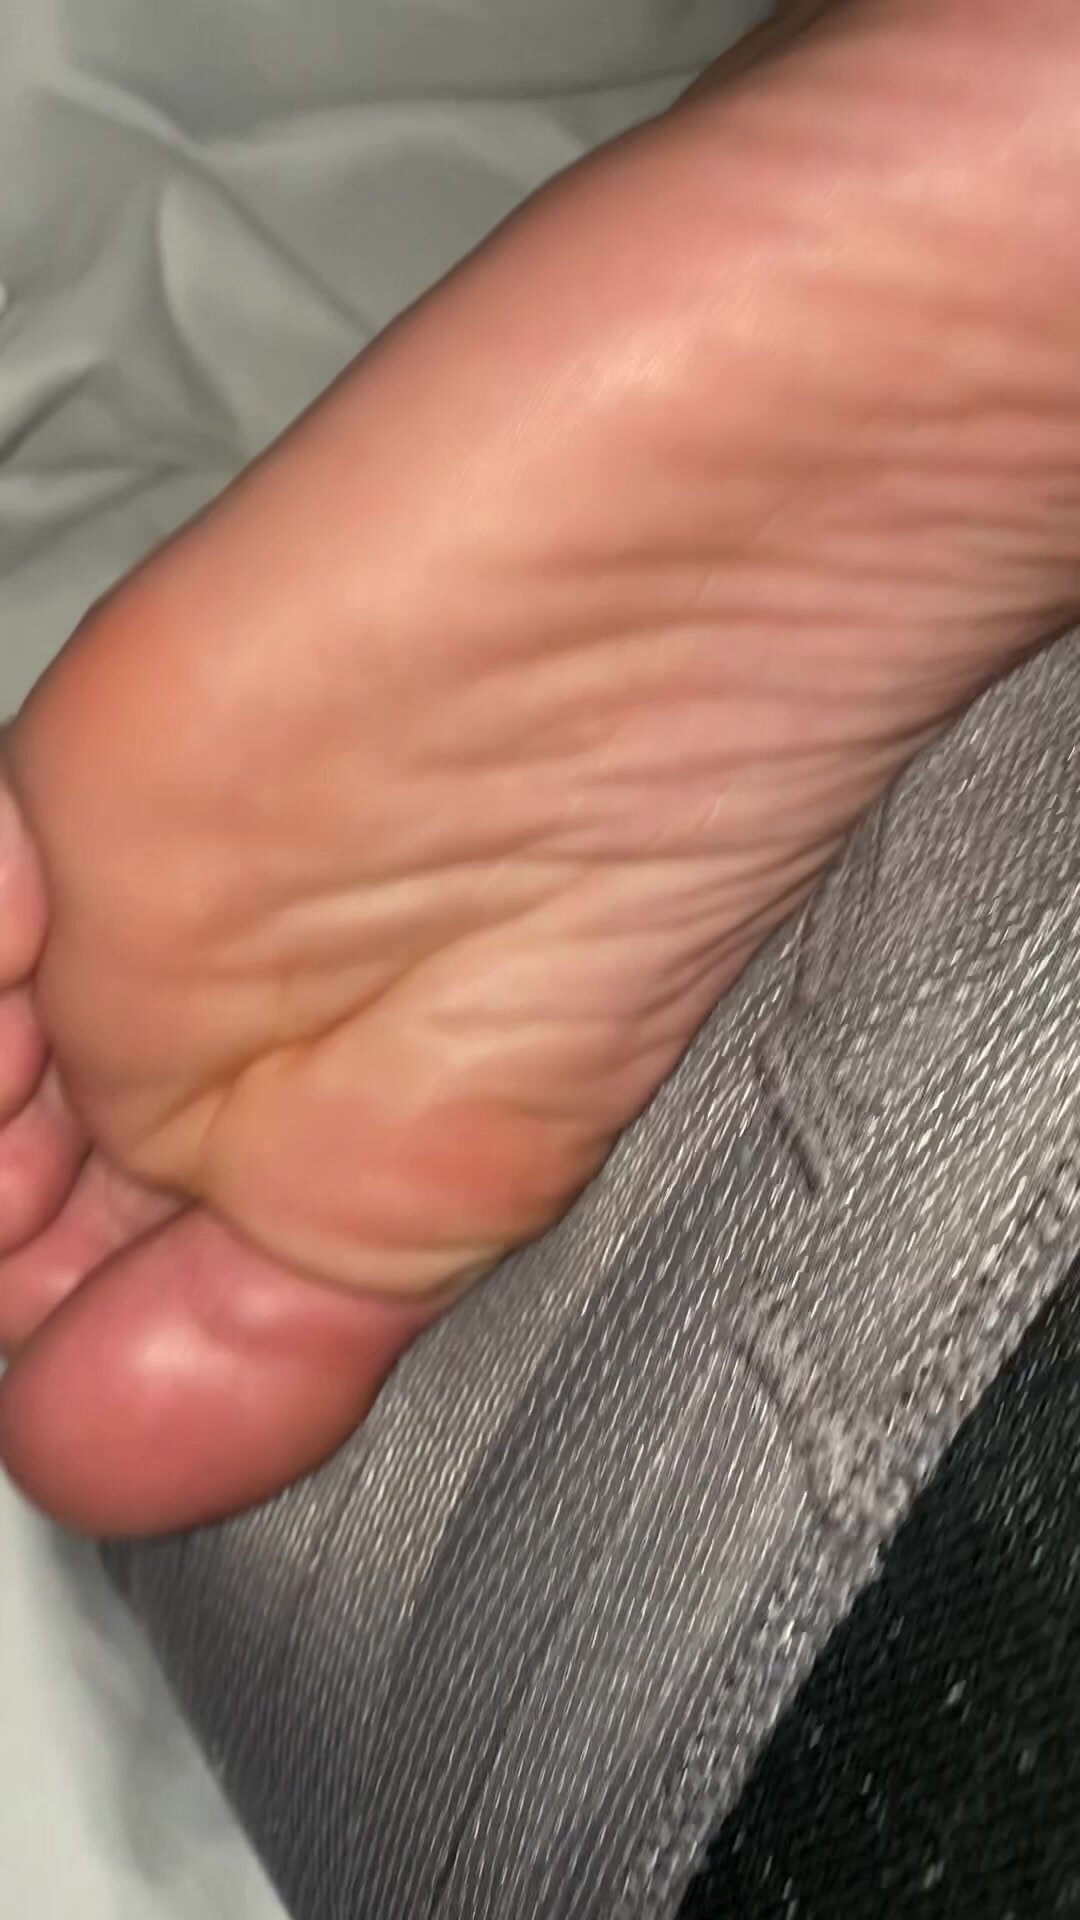 Gabriel’s Feet Part 2